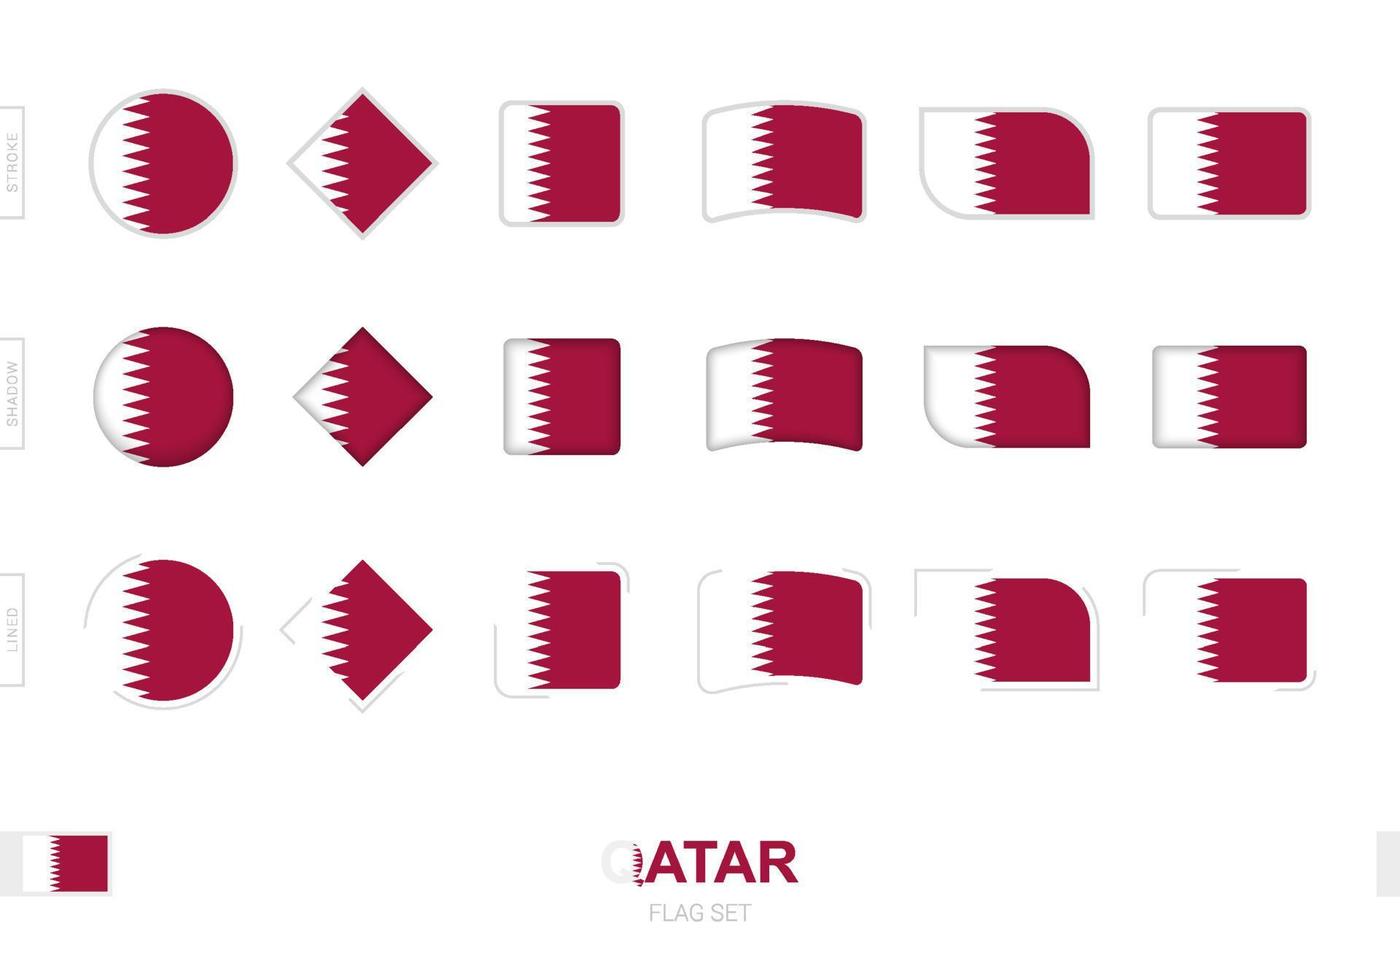 Conjunto de bandeiras do Catar, bandeiras simples do Catar com três efeitos diferentes. vetor